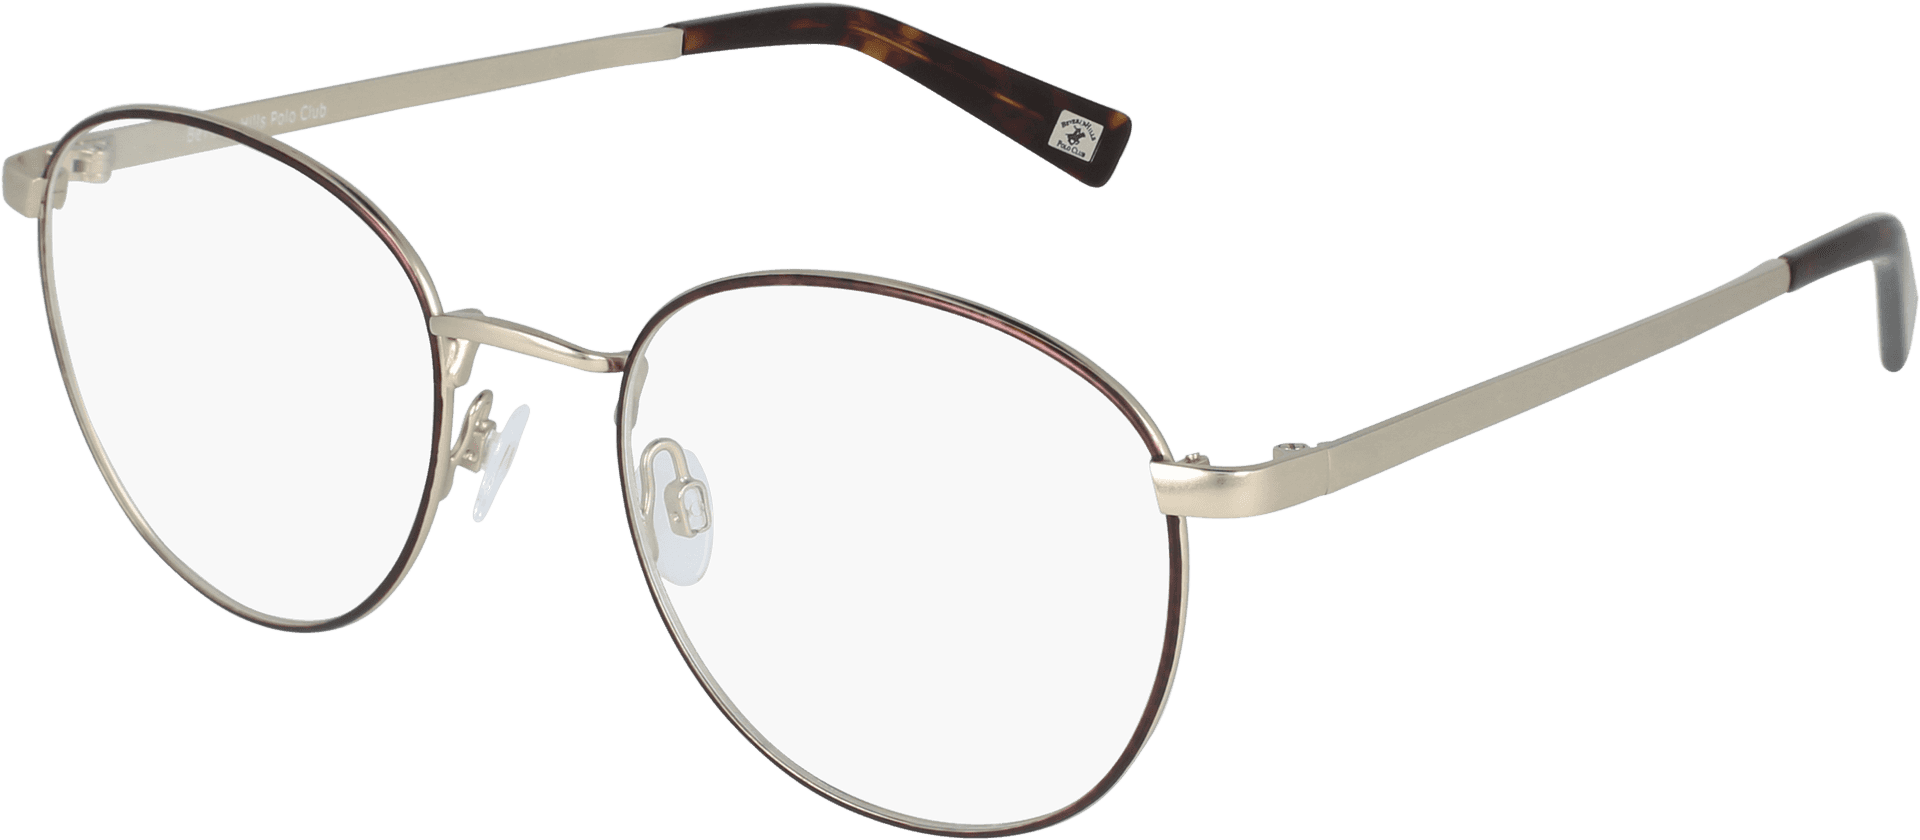 Elegant Round Eyeglasses Transparent Background PNG image